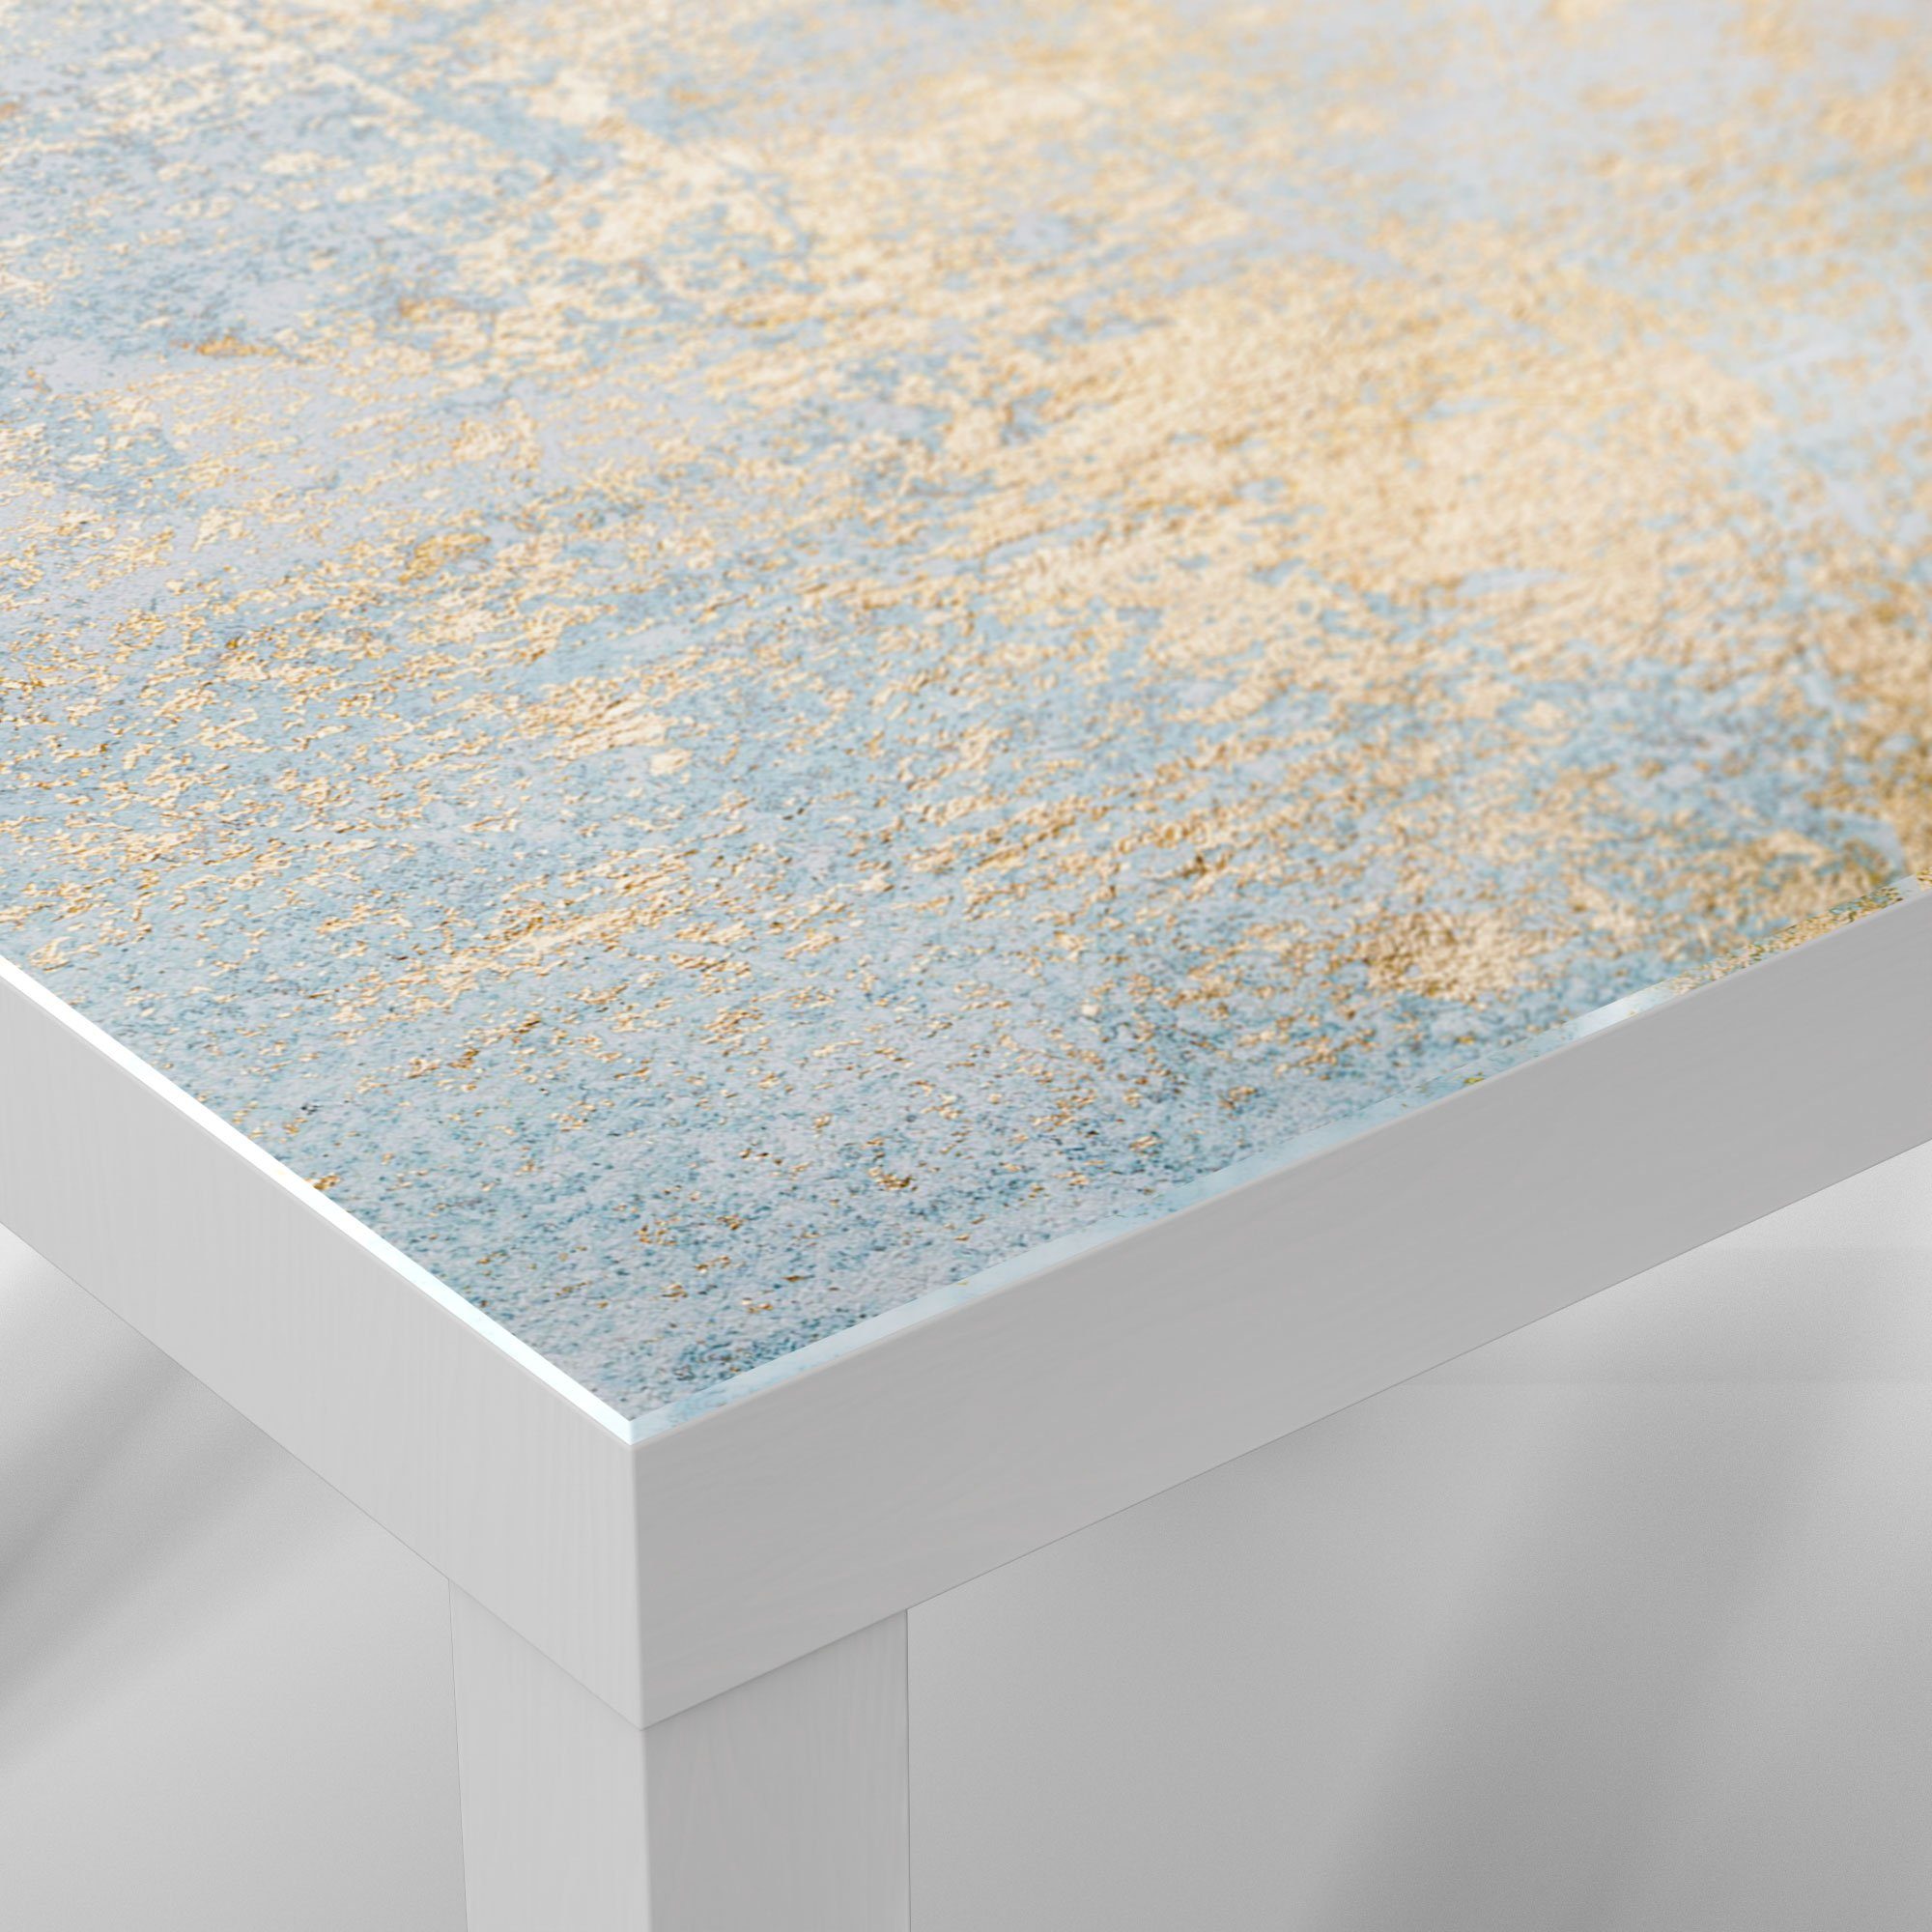 'Wand Gold-Struktur', DEQORI Beistelltisch Weiß Glastisch mit Couchtisch modern Glas